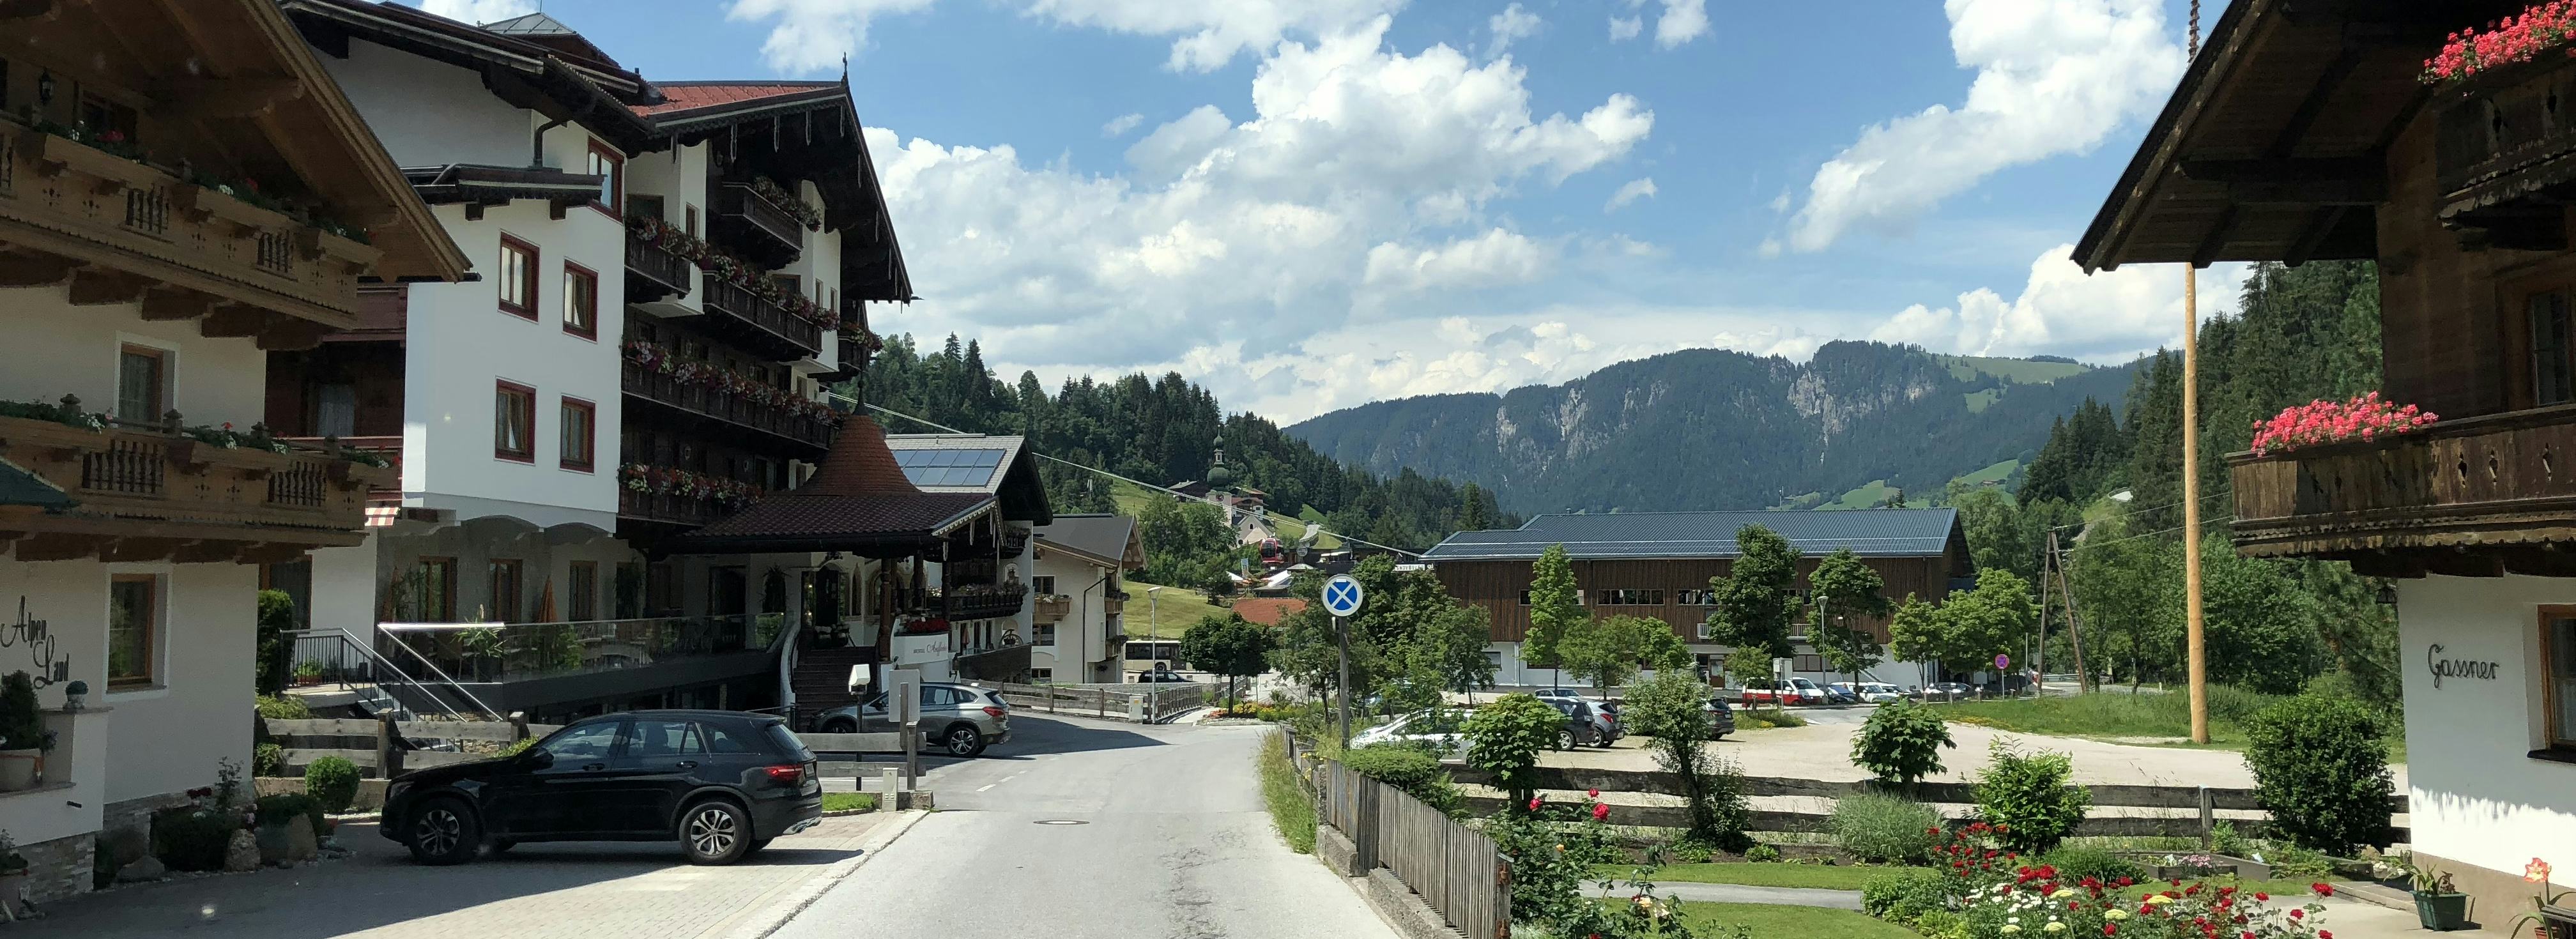 Wildschönau Dorf